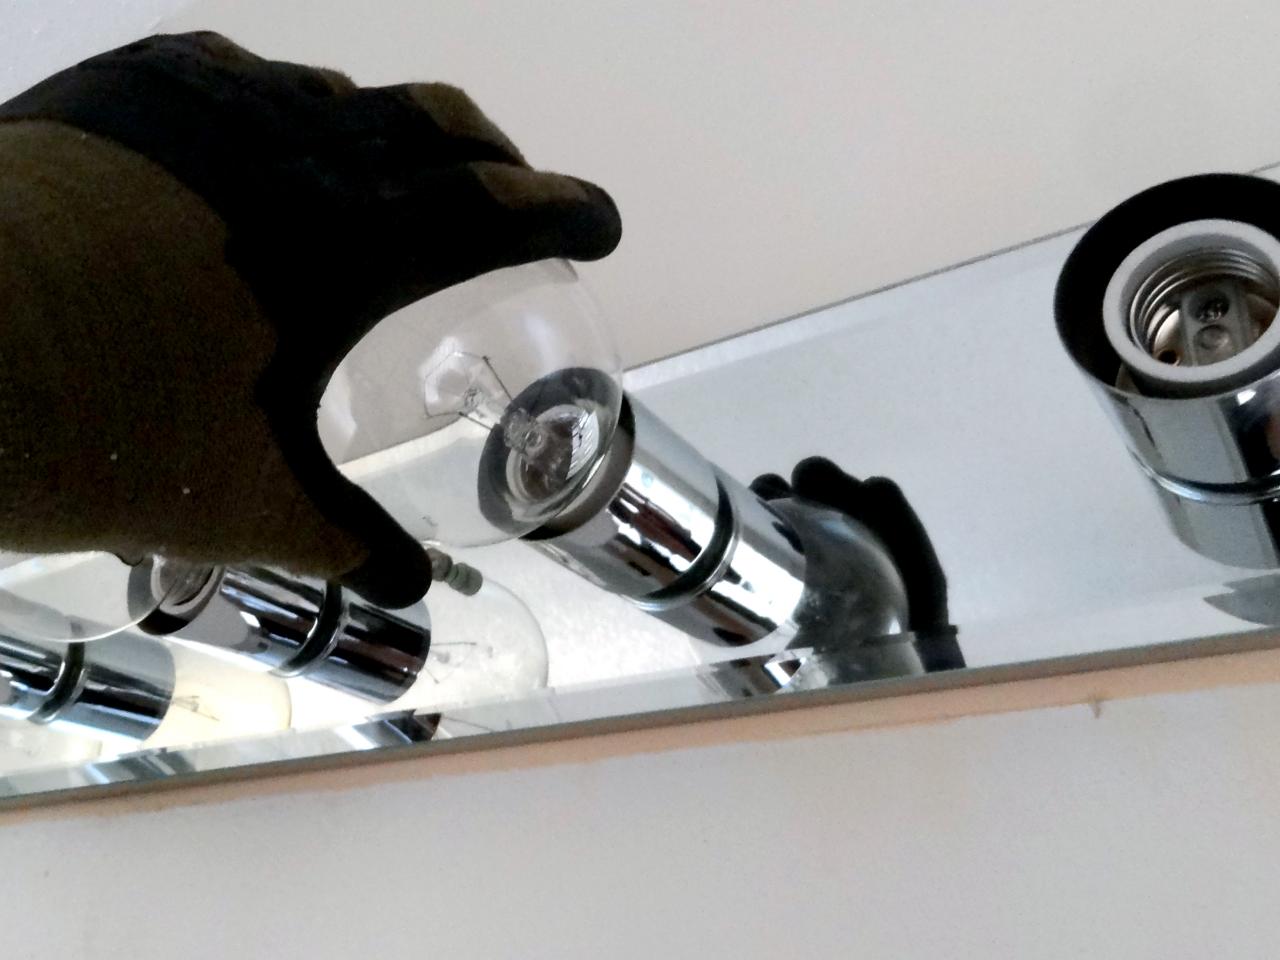 How To Replace A Bathroom Light Fixture How Tos Diy